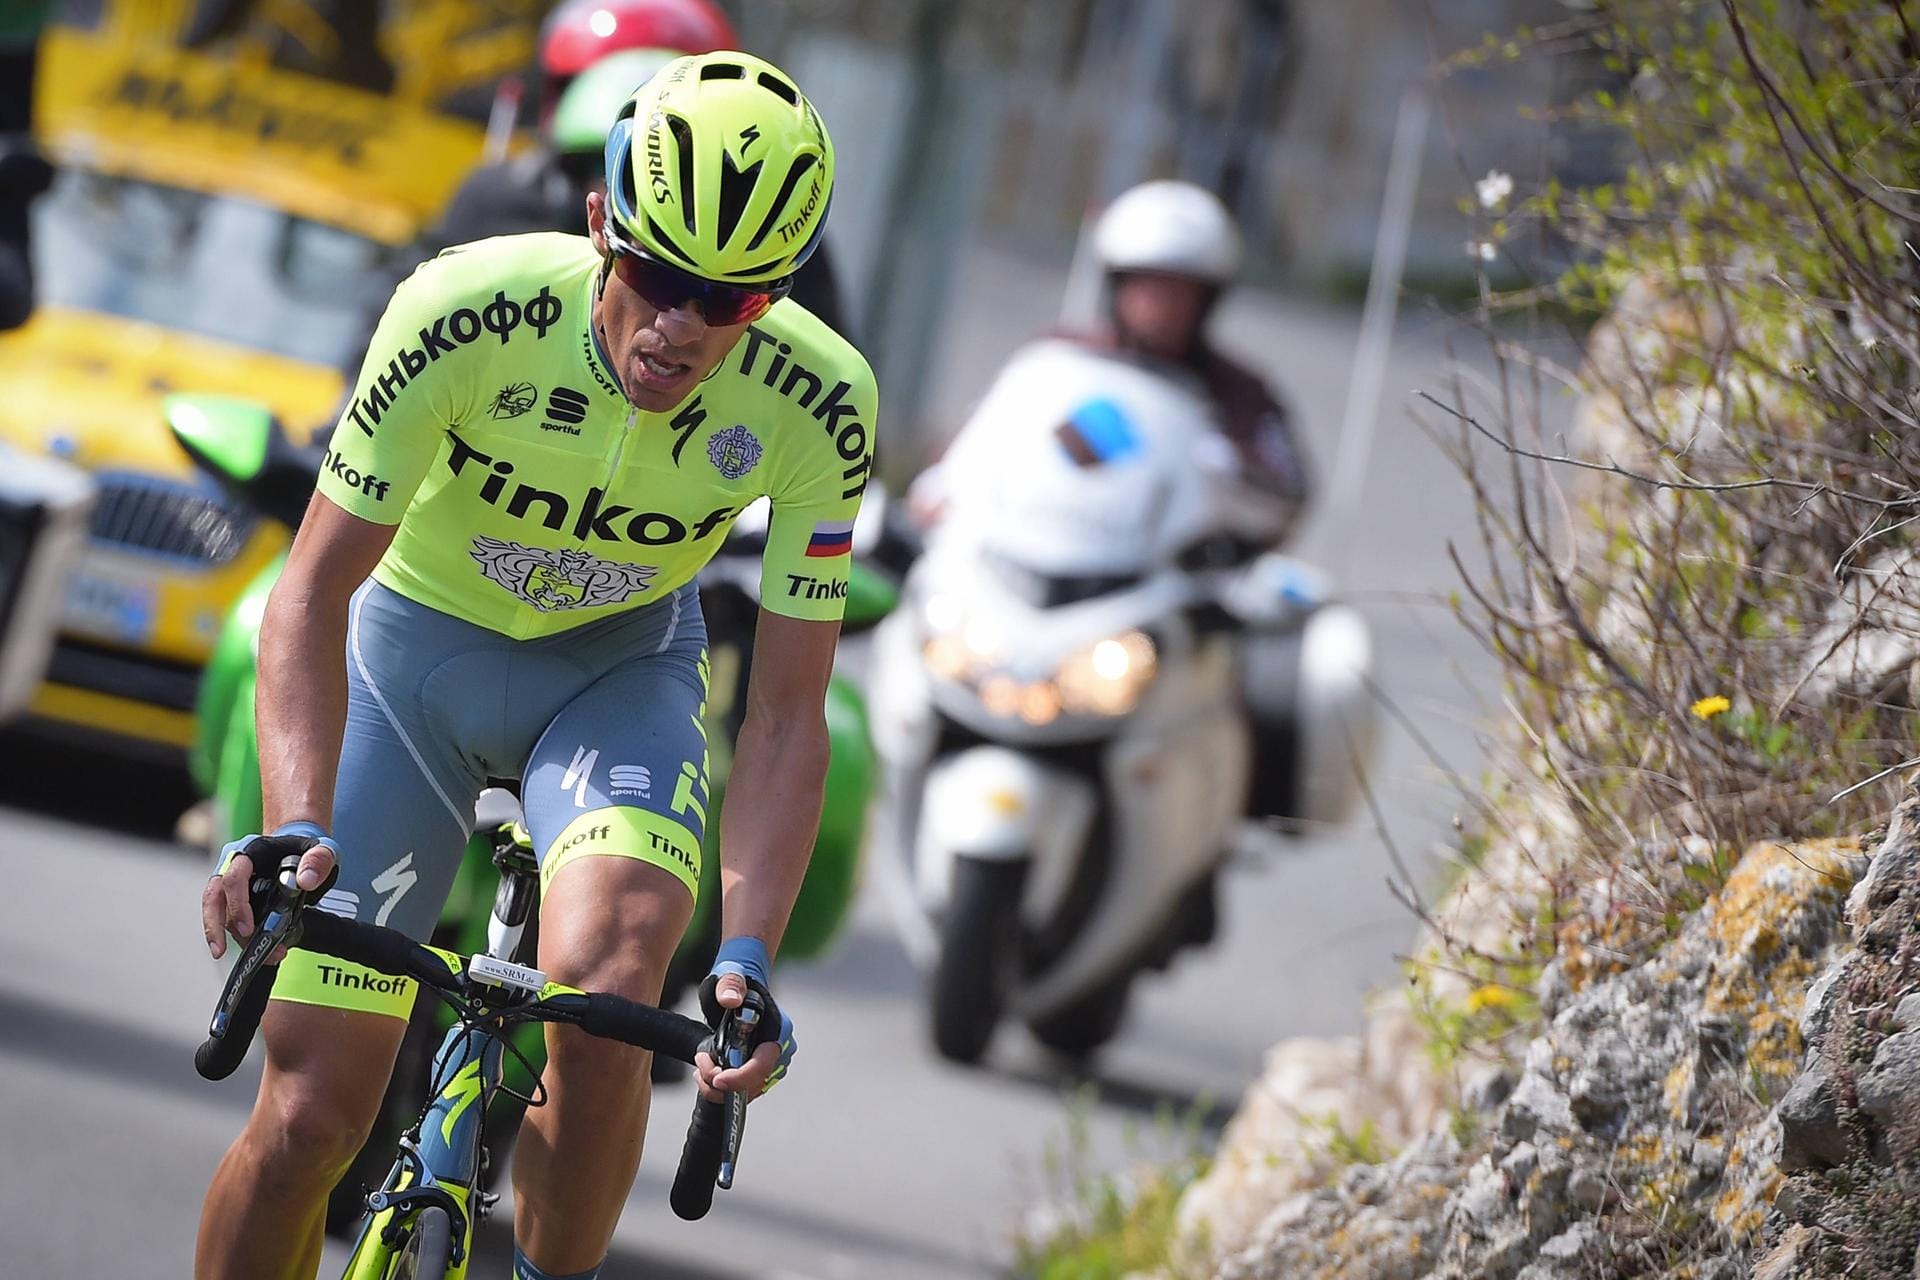 Einer der ganz Großen: Die Tour hat Alberto Contadar gewonnen. Giro und Vuelta auch. Beim russischen Team Tinkoff hoffen sie darauf, dass der spanische Routinier einen weiteren großen Rundfahrt-Triumph folgen lassen kann.